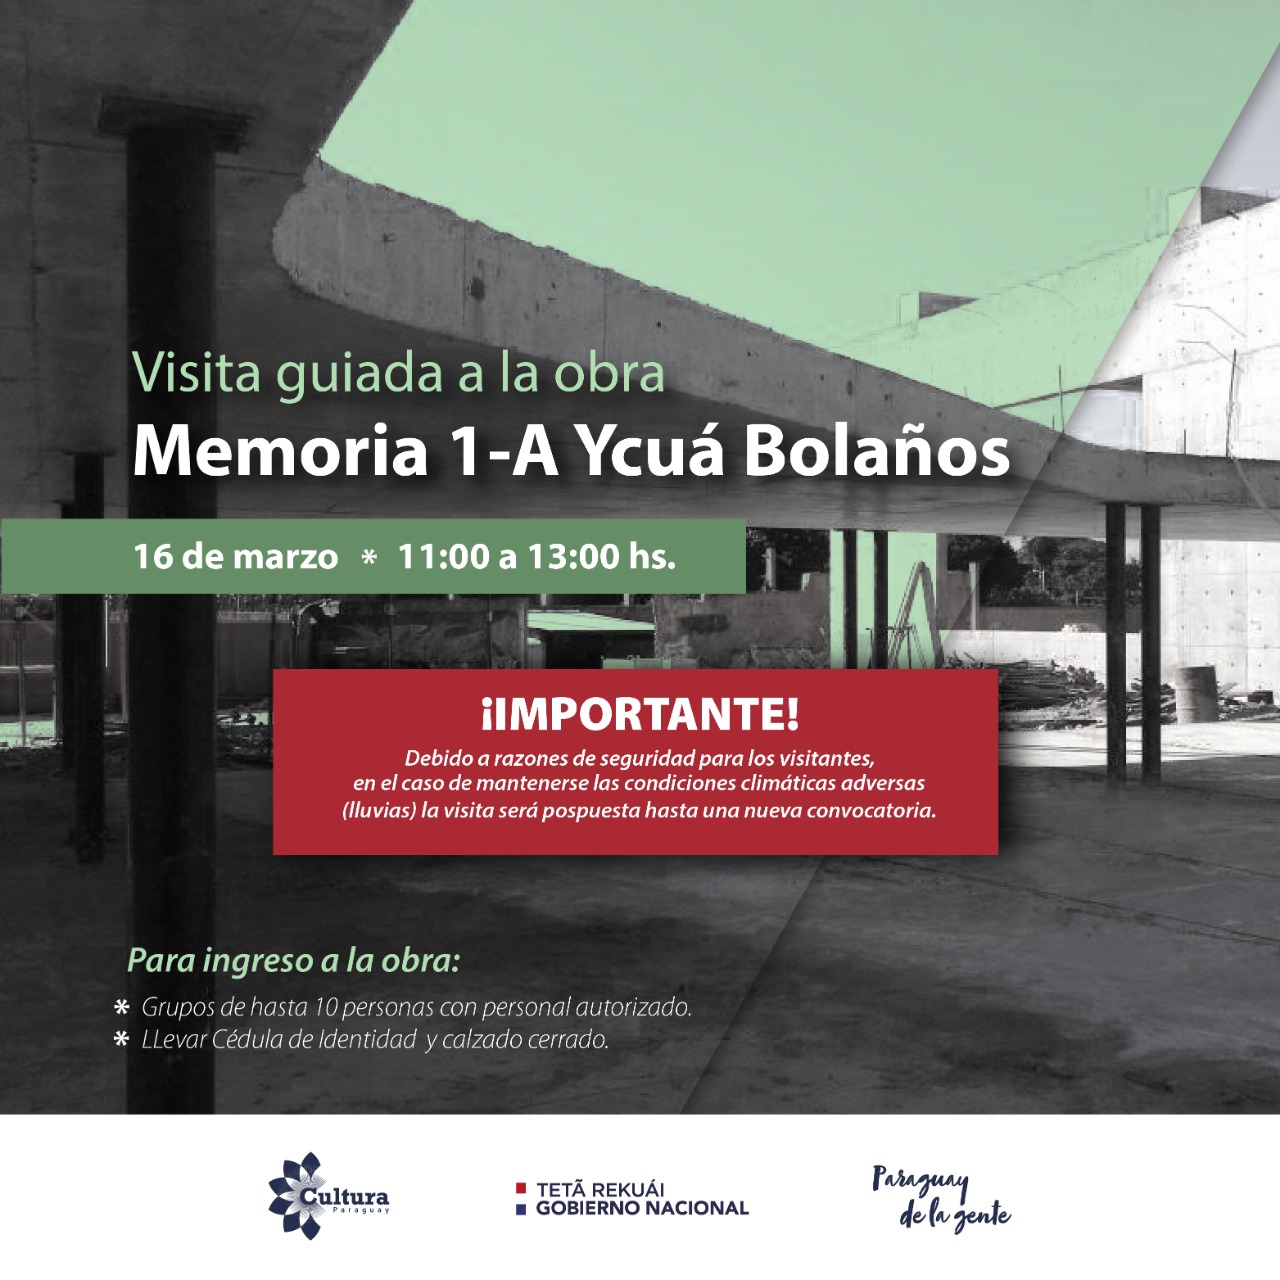 Visita guiada al sitio de memoria 1-A Ycuá Bolaños estará sujeta a las condiciones climáticas imagen